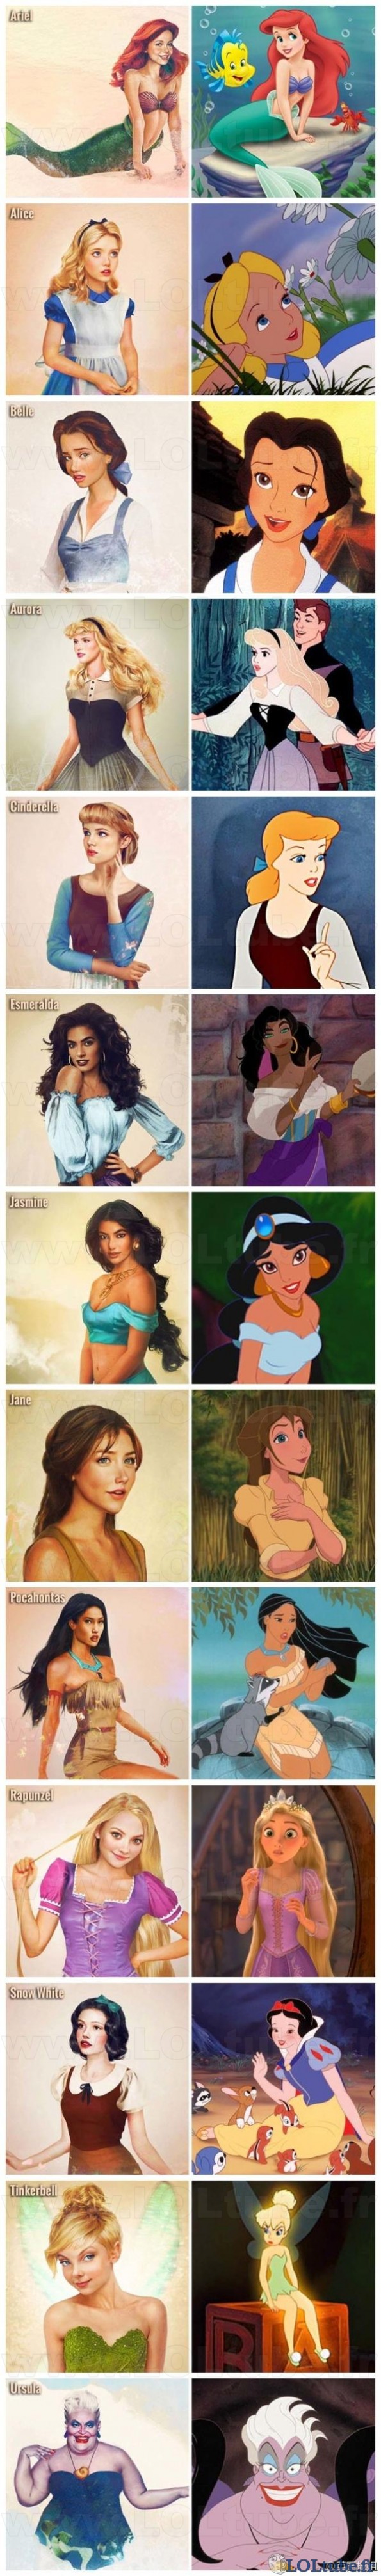 Les personnages Disney